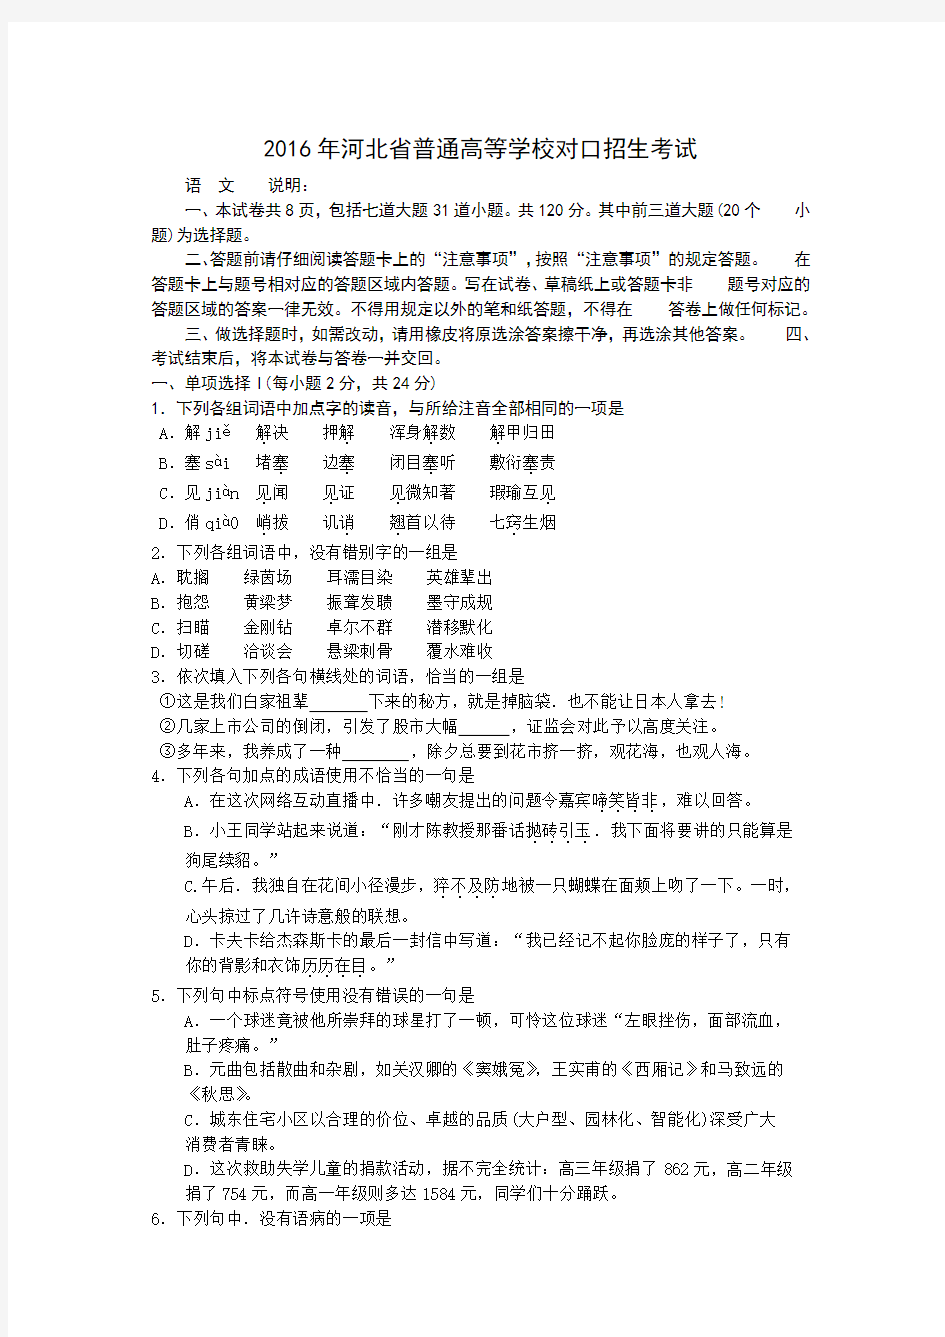 2016年河北省普通高等学校对口招生考试试题及答案